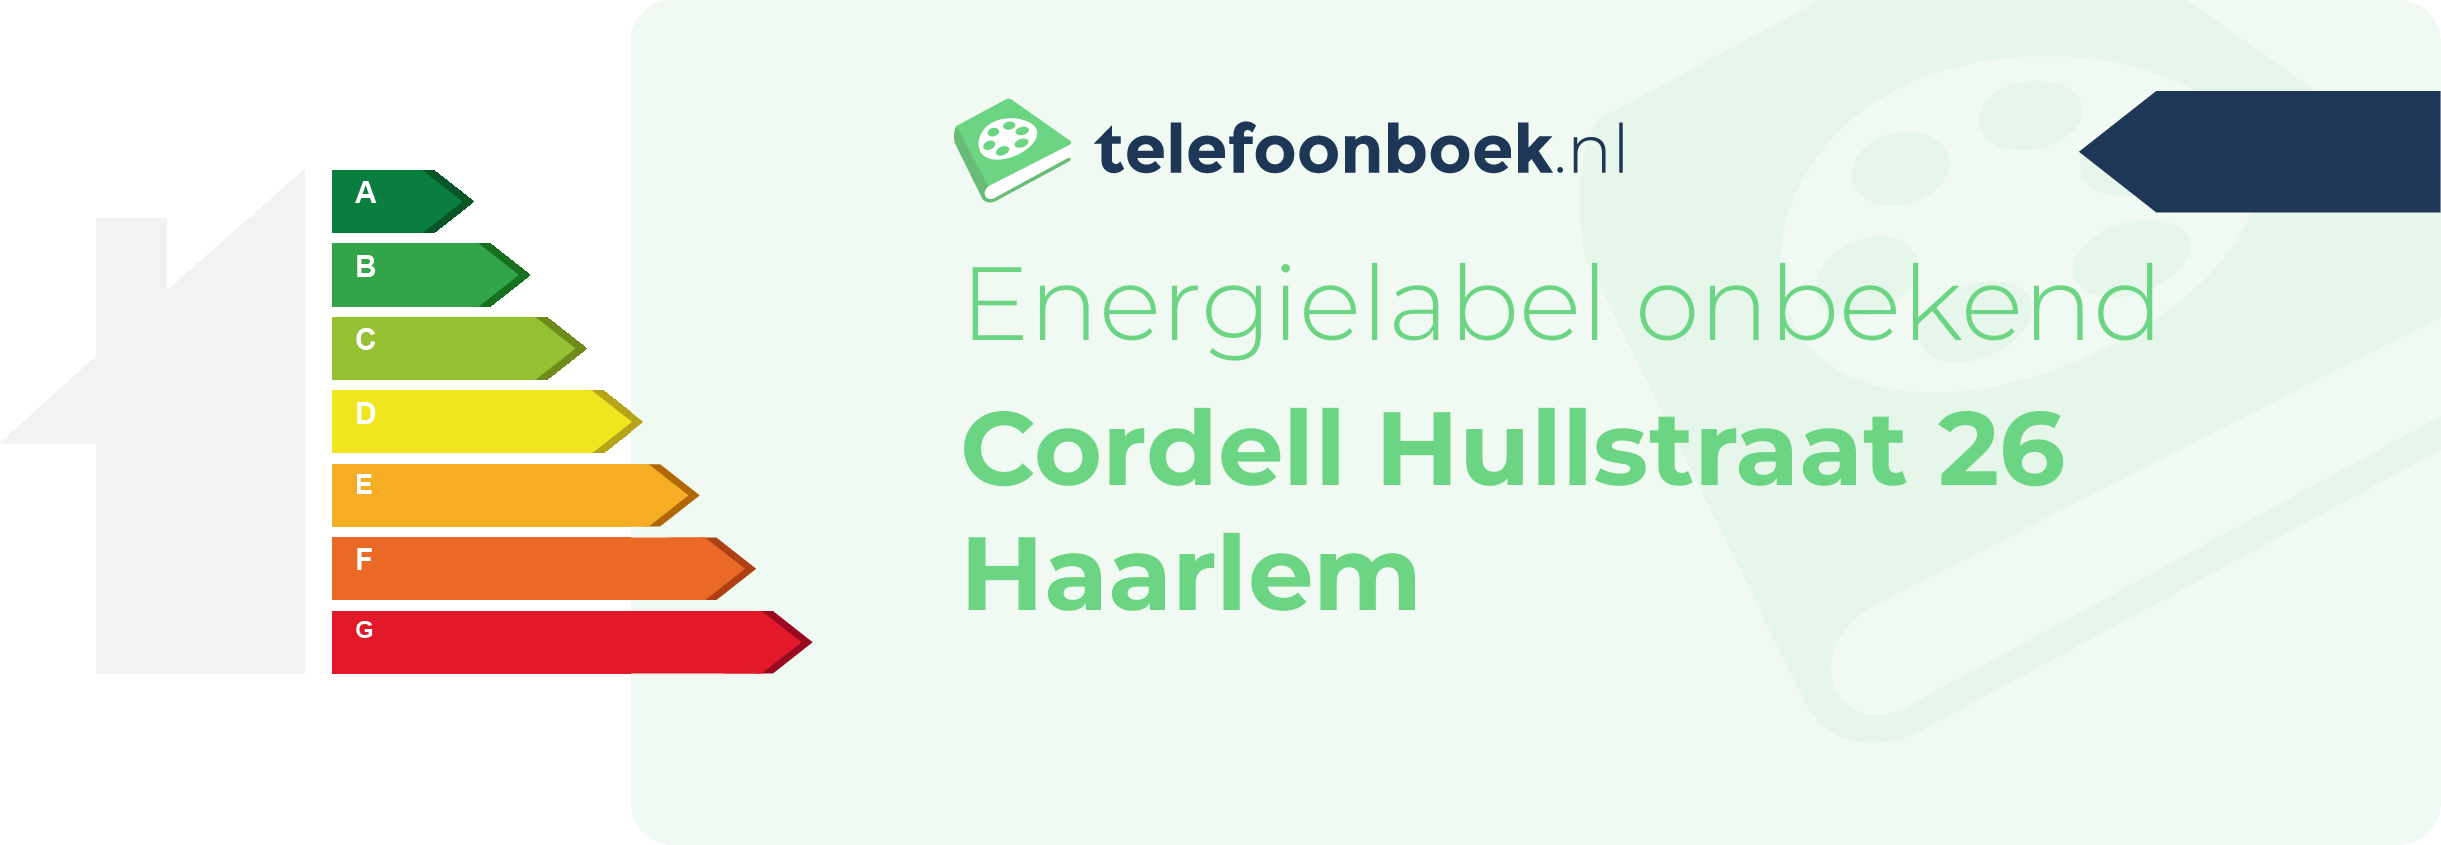 Energielabel Cordell Hullstraat 26 Haarlem